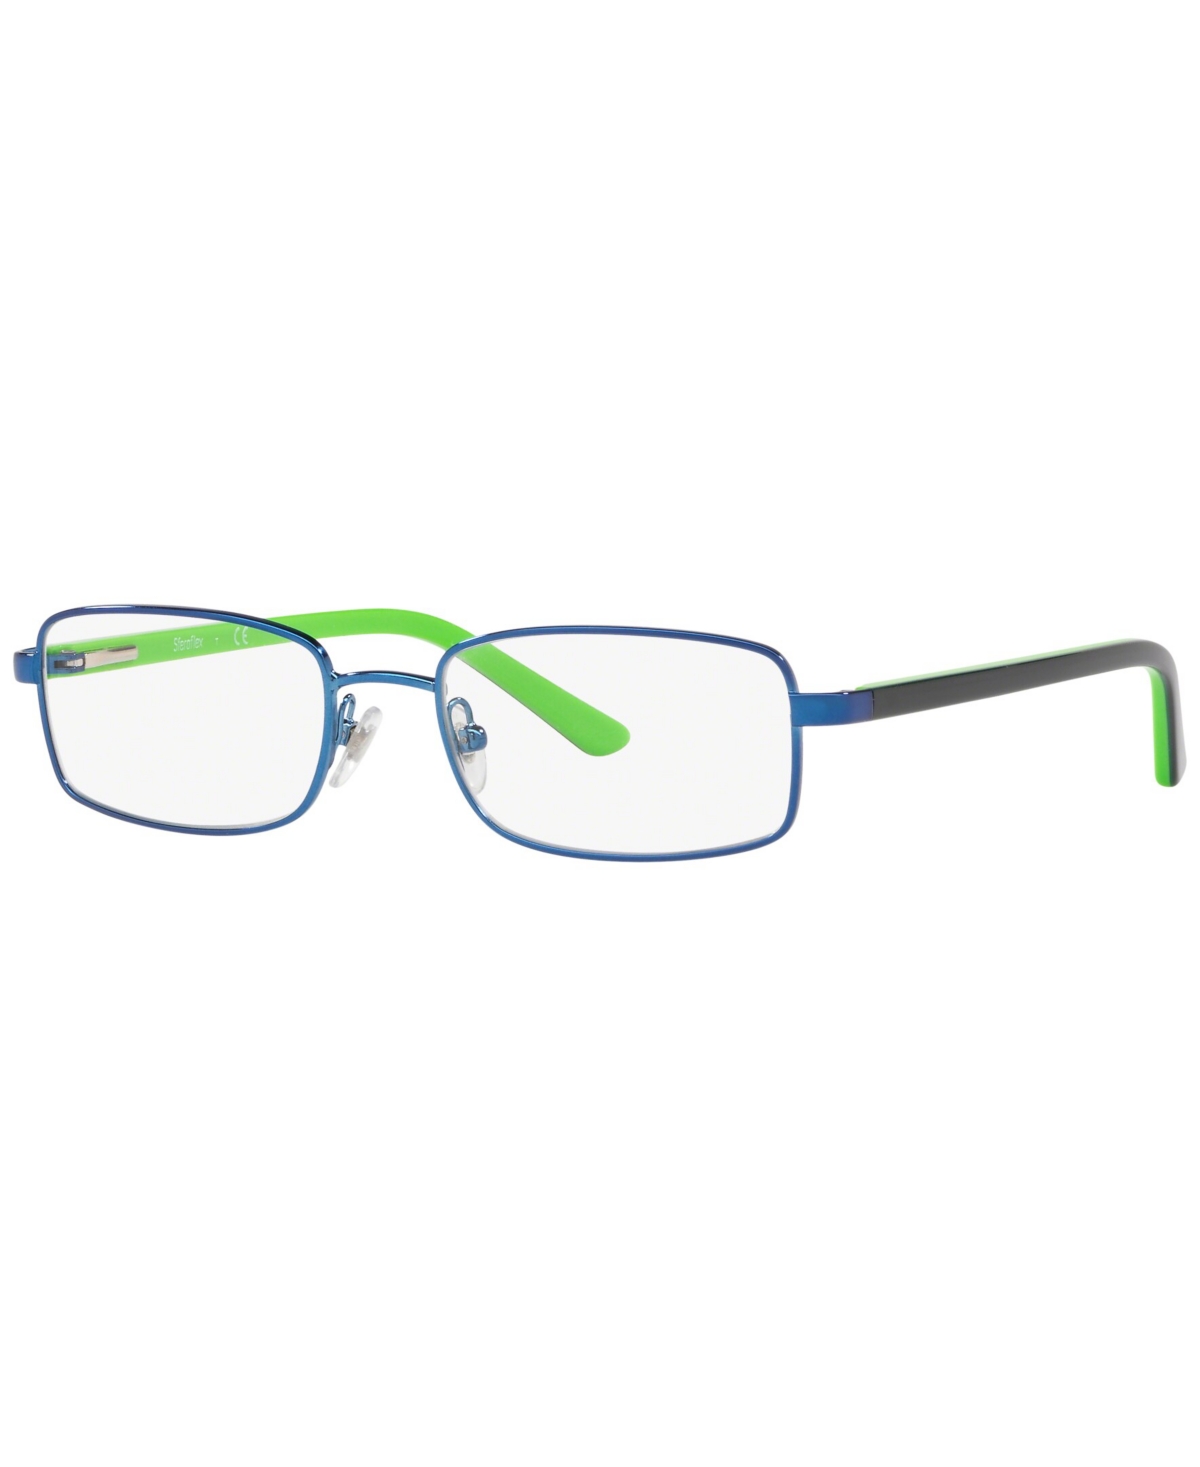 SF2856 Men's Rectangle Eyeglasses - Blue